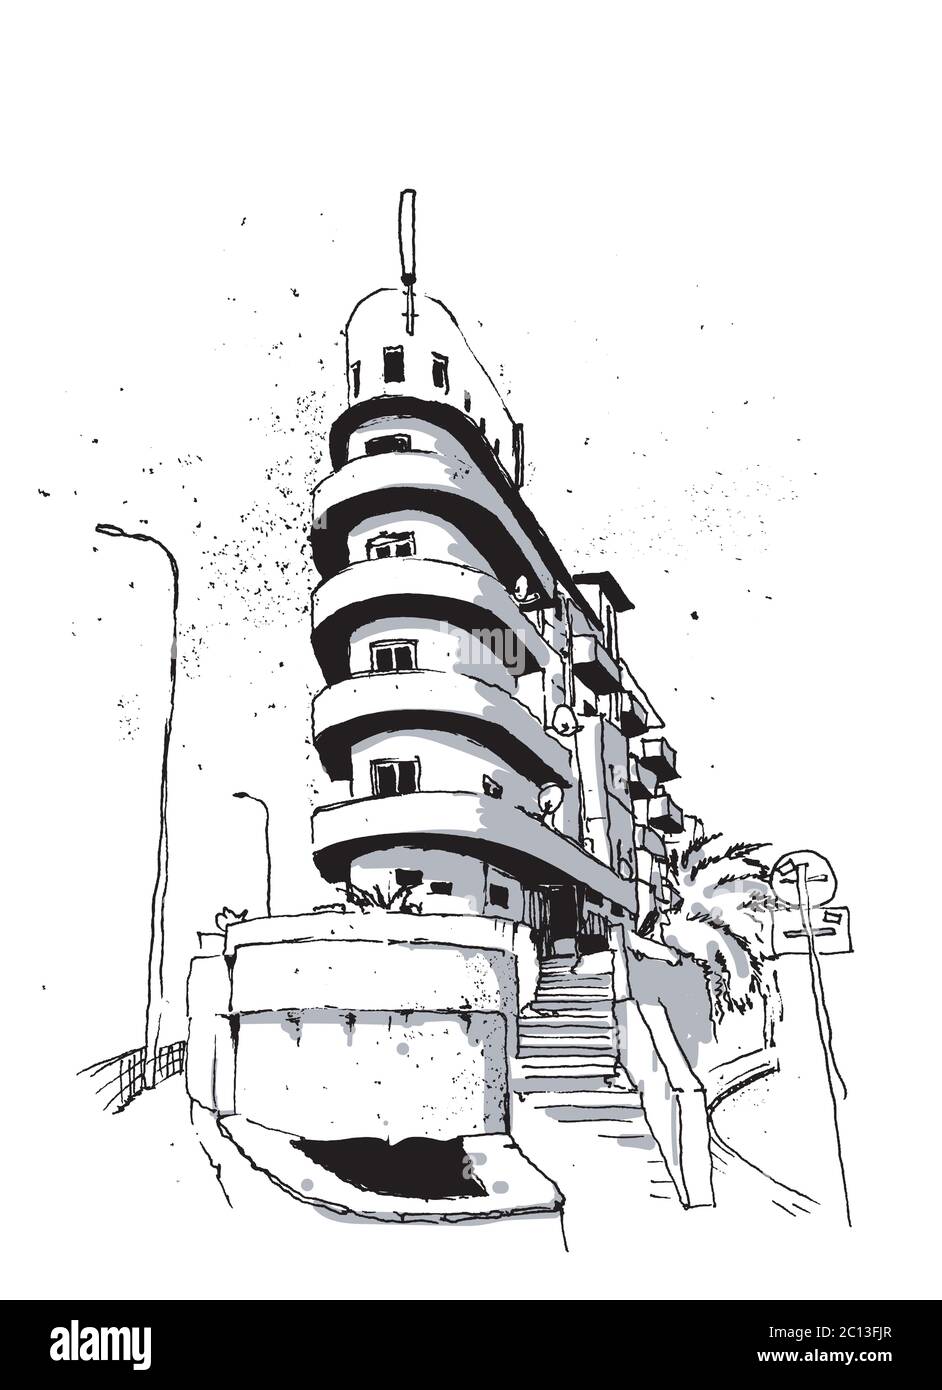 Disegno di un disegno di un angolo in Tel Aviv Streets, architettura Bauhaus con curve rotonde, lo stile architettonico caratteristico della città Illustrazione Vettoriale